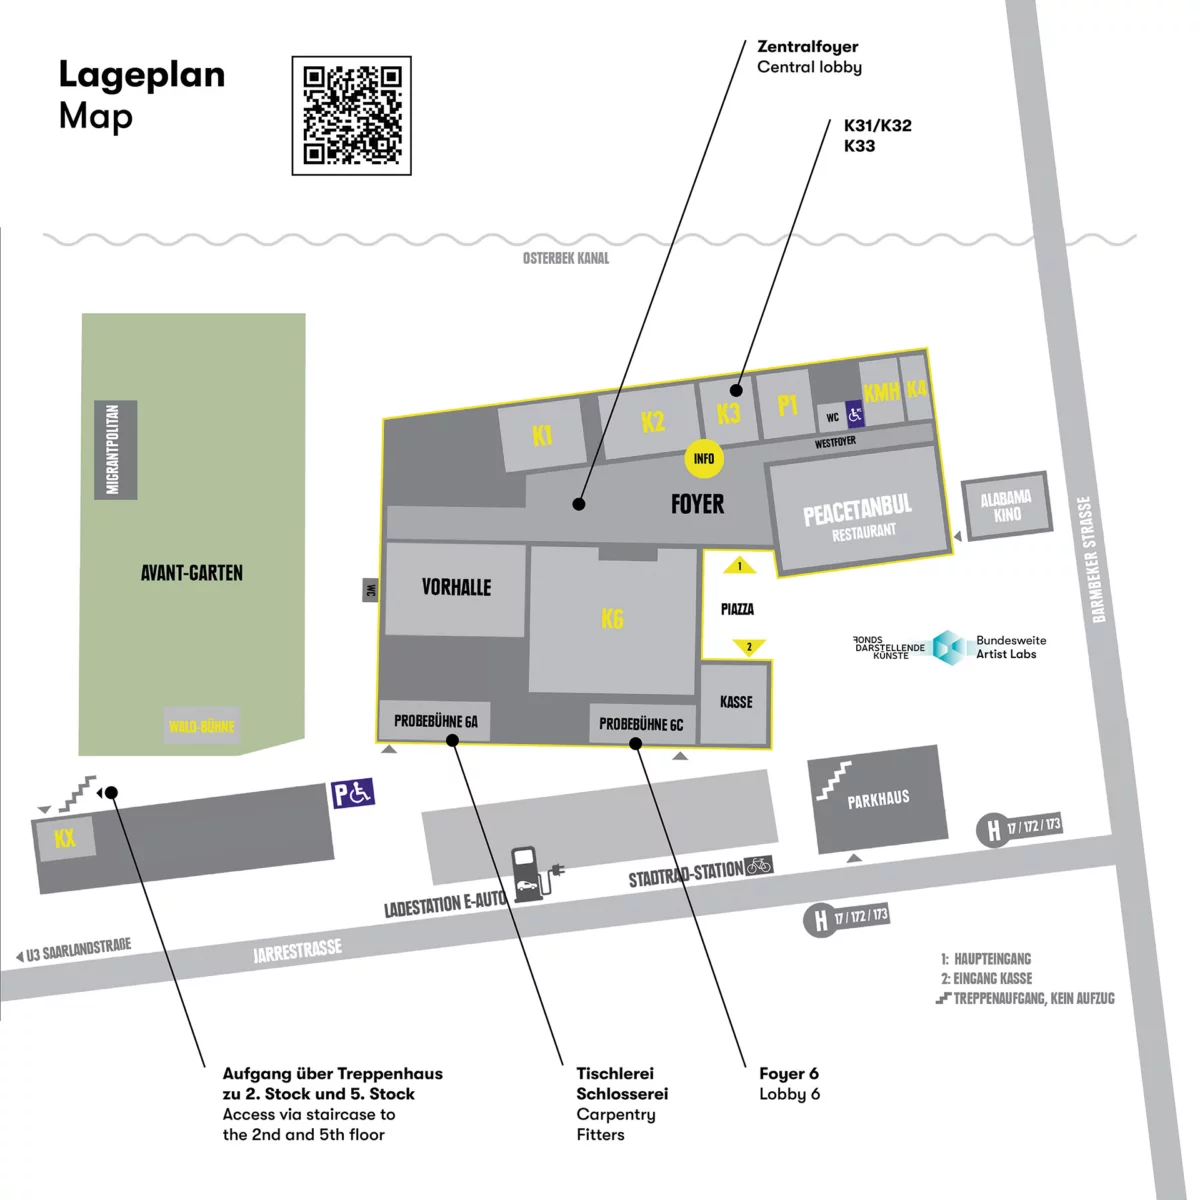 Schematische Zeichnung des Geländes und der Räume von Kampnagel. Im Zentralfoyer ist der Infostand und die Anmeldung zu finden.